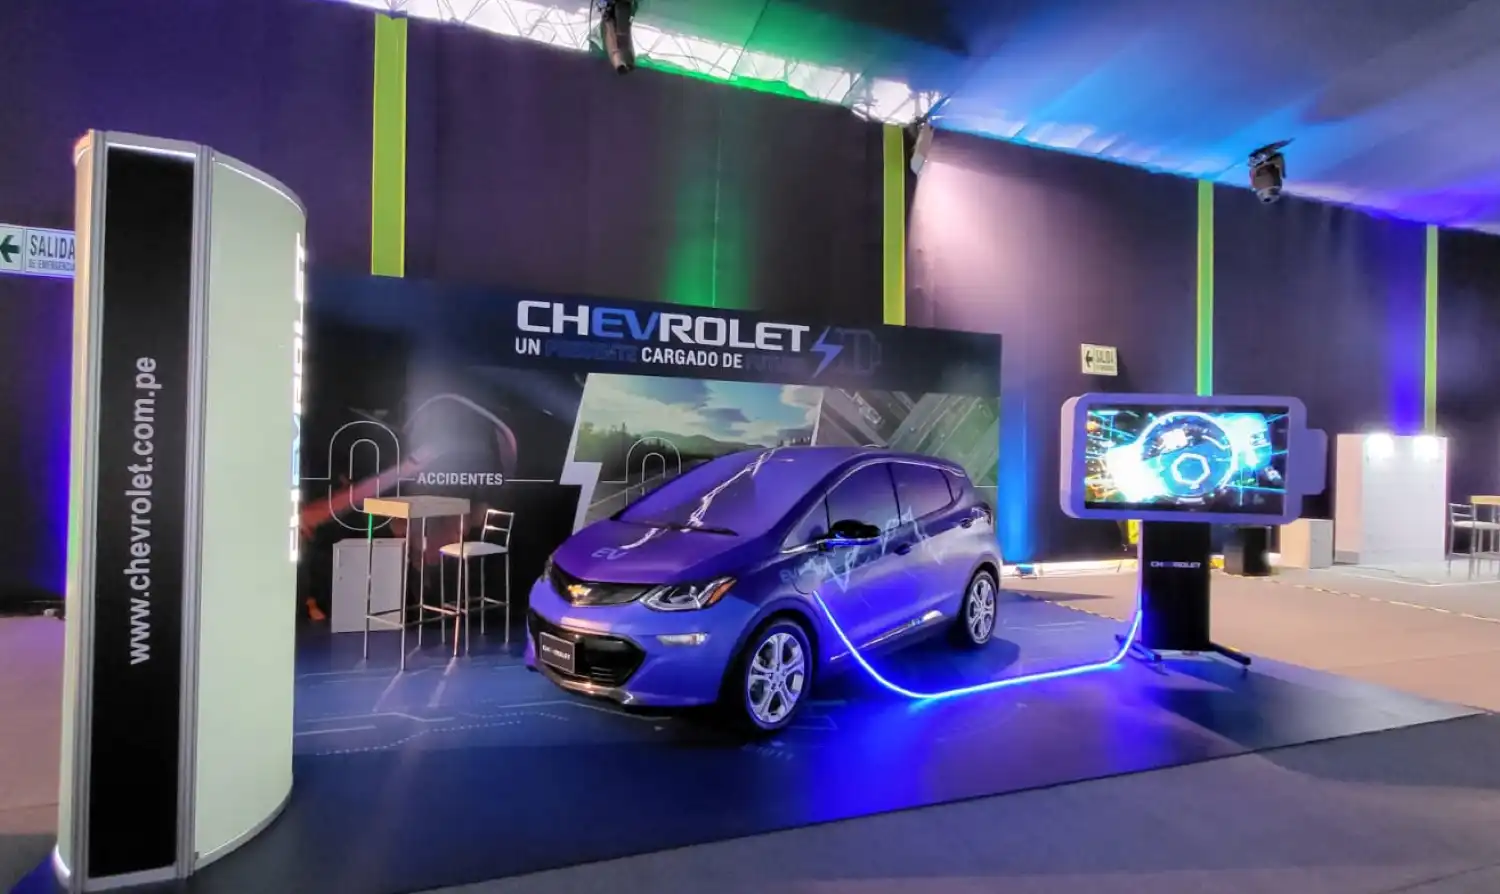 General Motors: “La electromovilidad abrirá oportunidades de negocio"